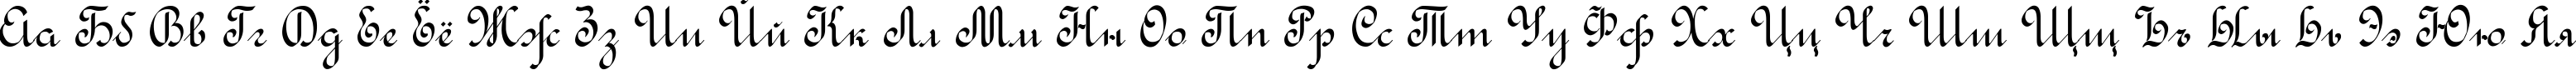 Пример написания русского алфавита шрифтом Rondo Calligraphic